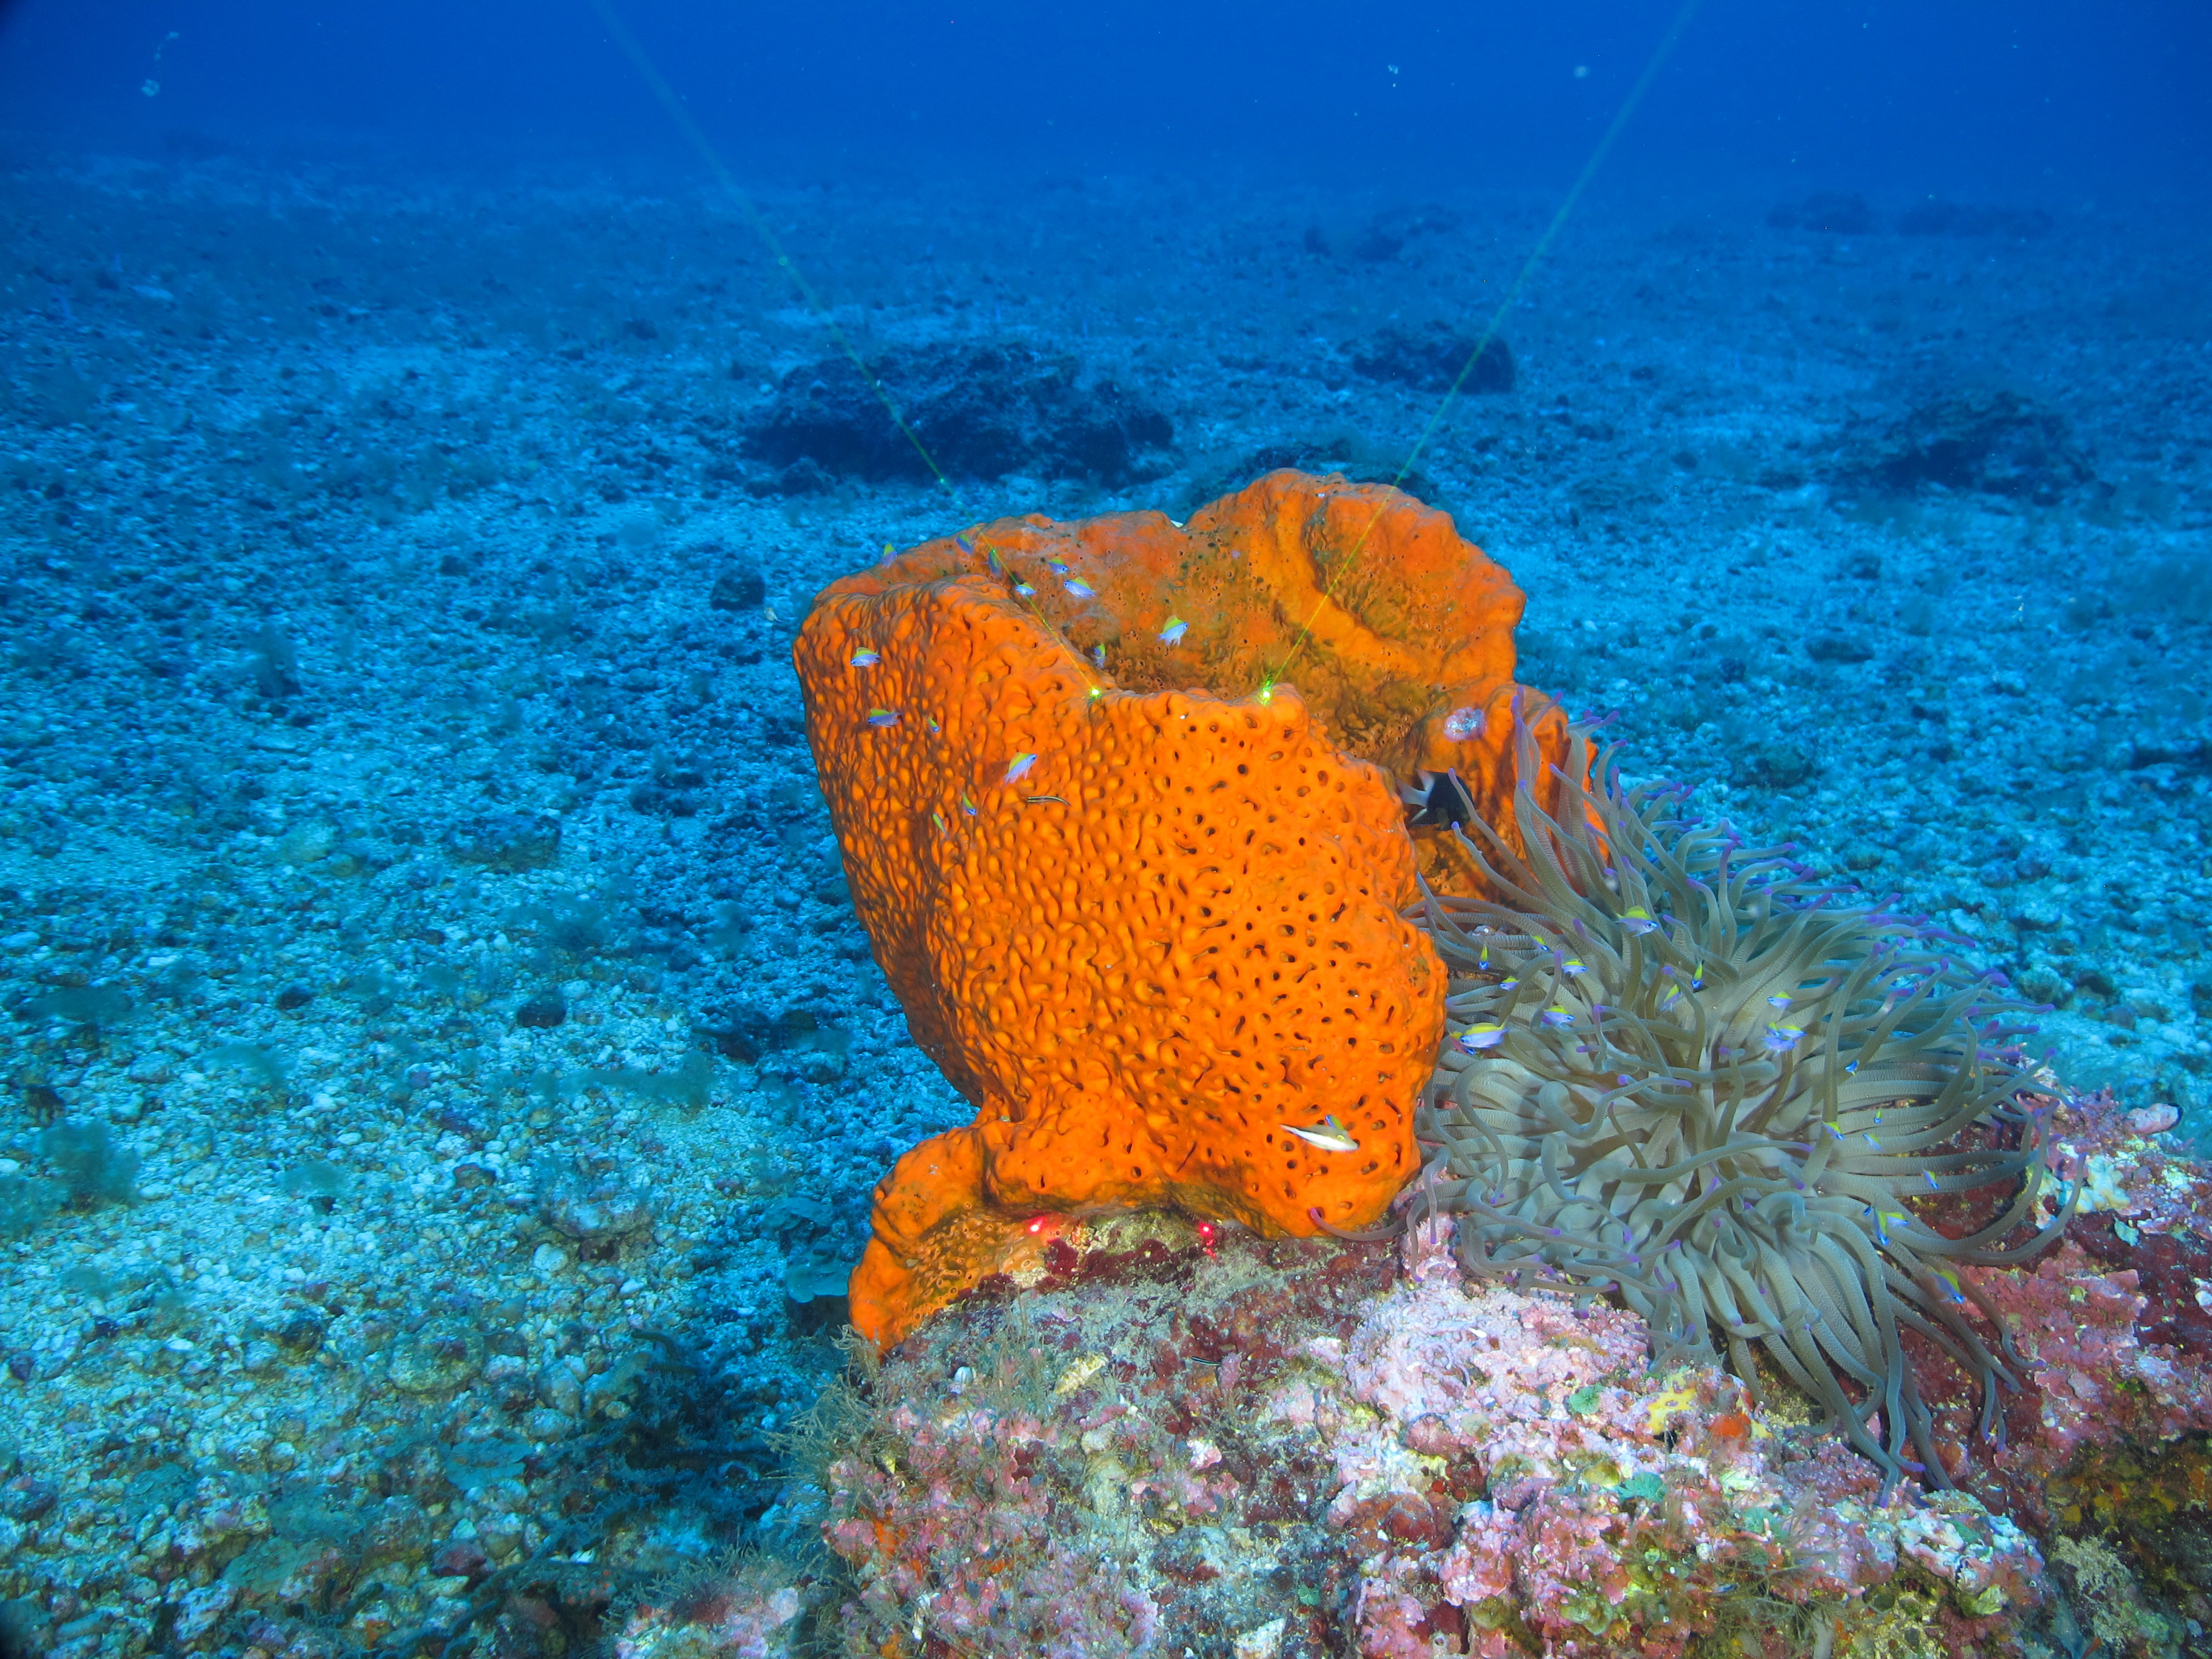 Sea Sponge - Description, Habitat, Image, Diet, and Interesting Facts